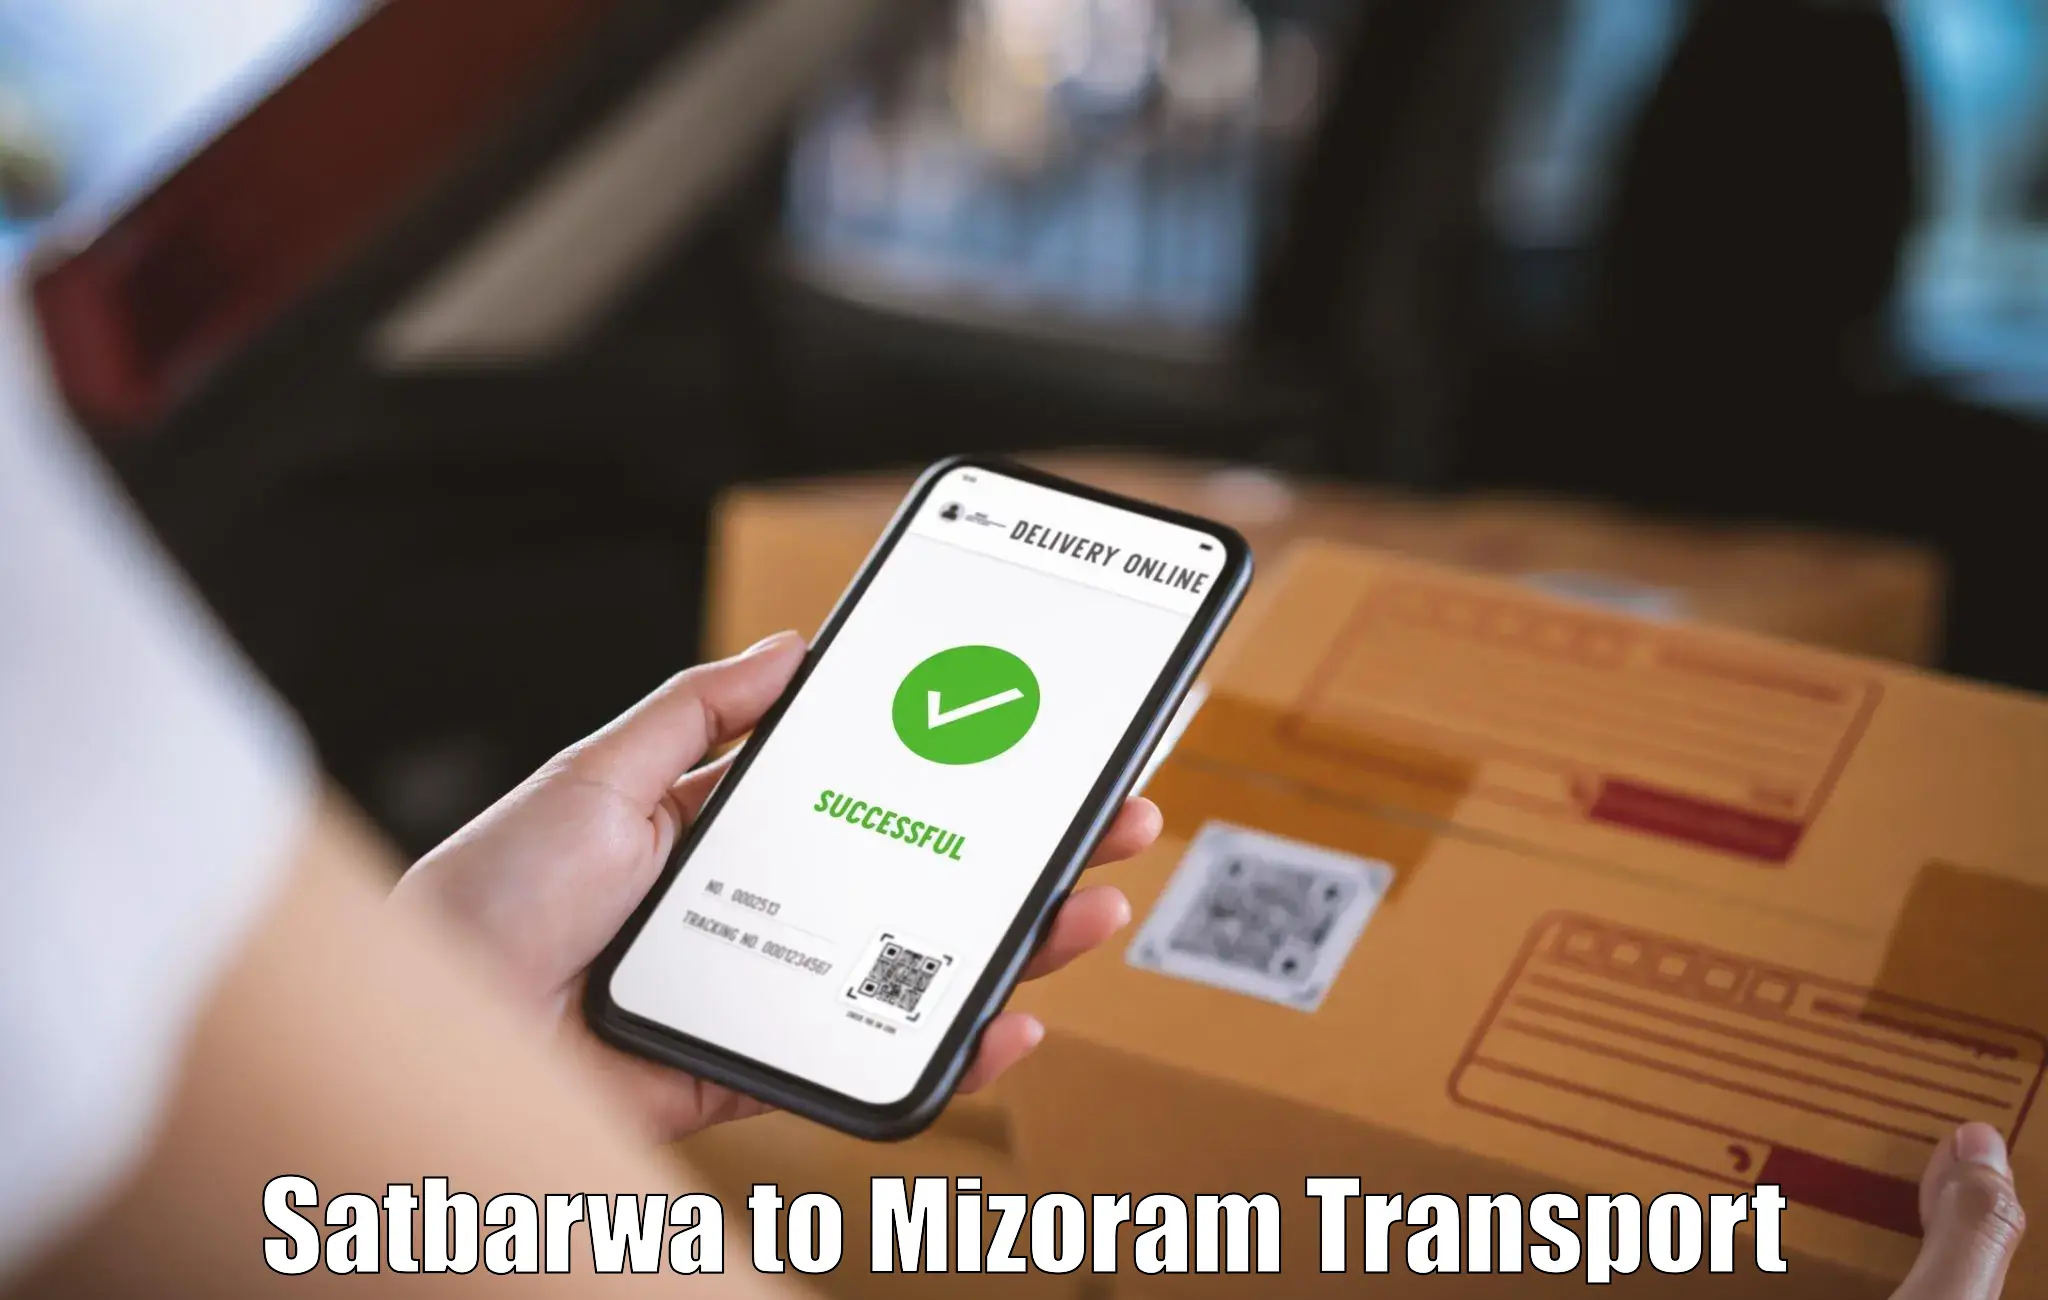 Sending bike to another city Satbarwa to Mizoram